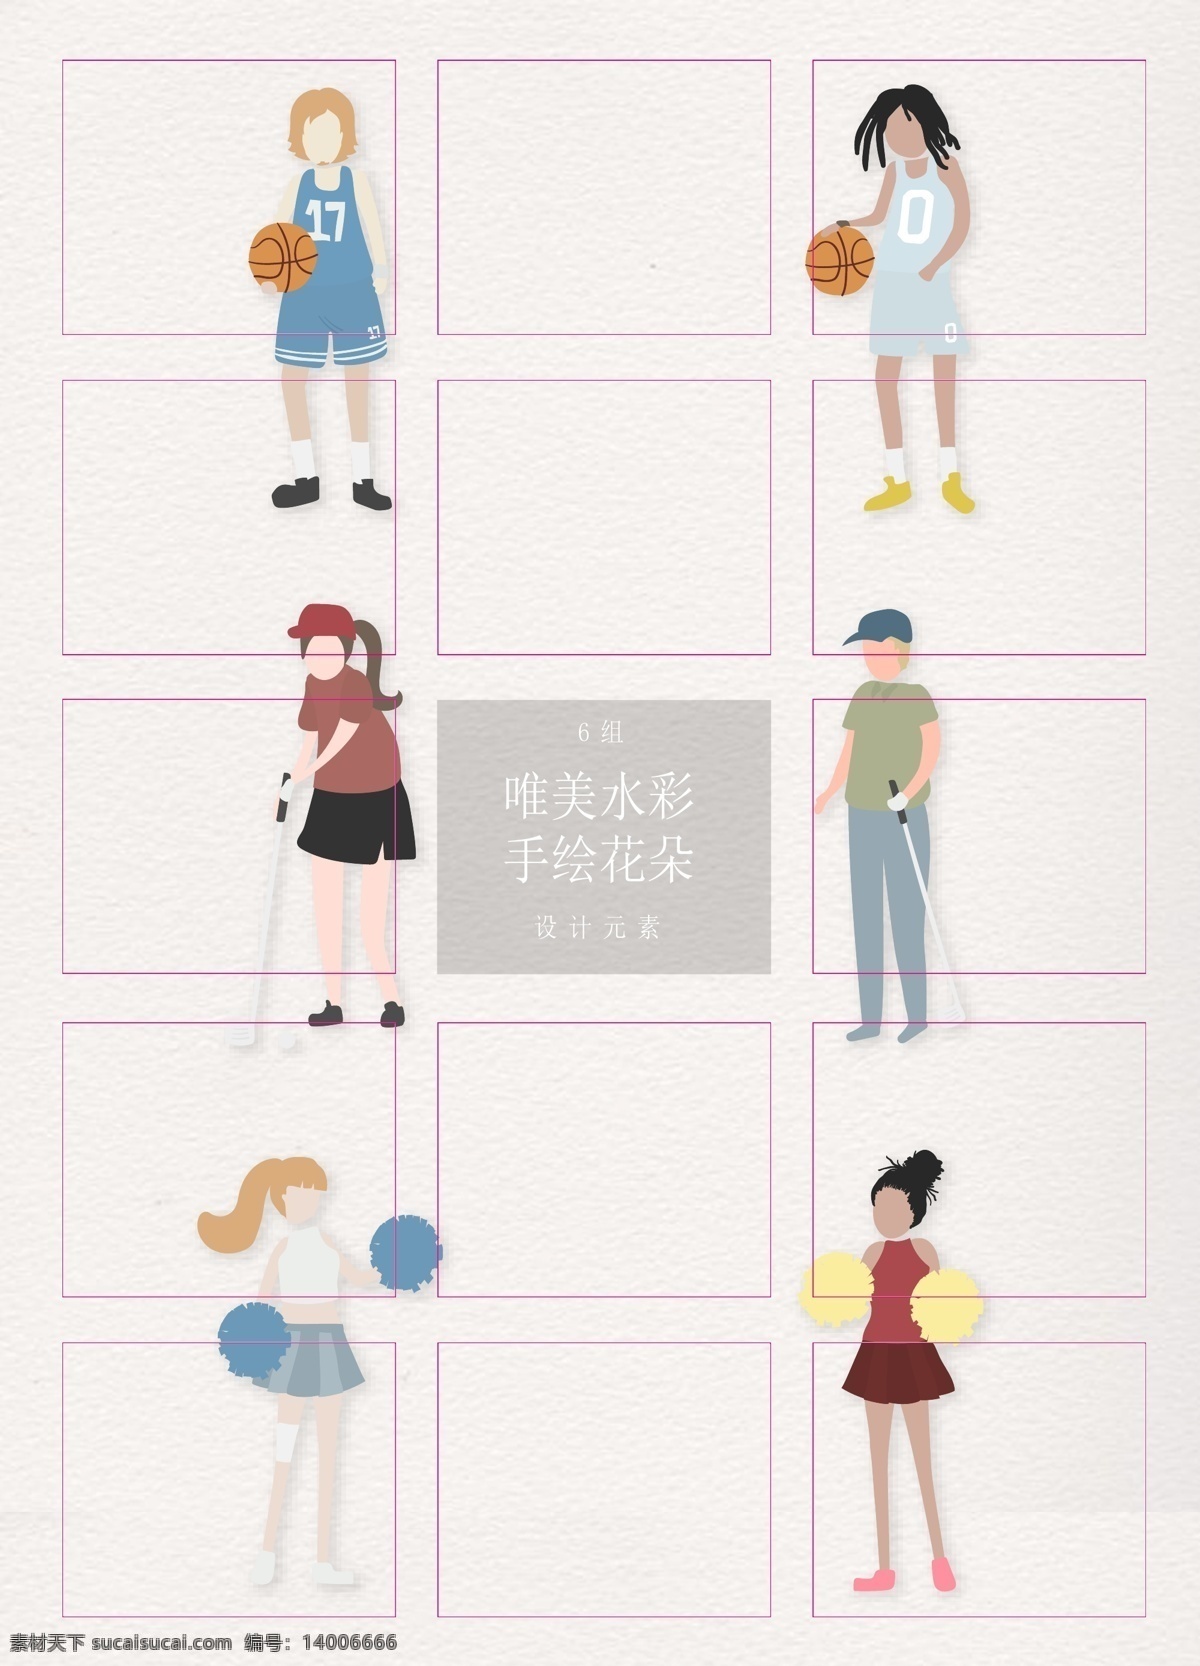 卡通 体育 职业 人物 合集 简约 矢量图 女孩 高尔夫 职业人物 人物设计 ai人物 篮球运动员 啦啦队